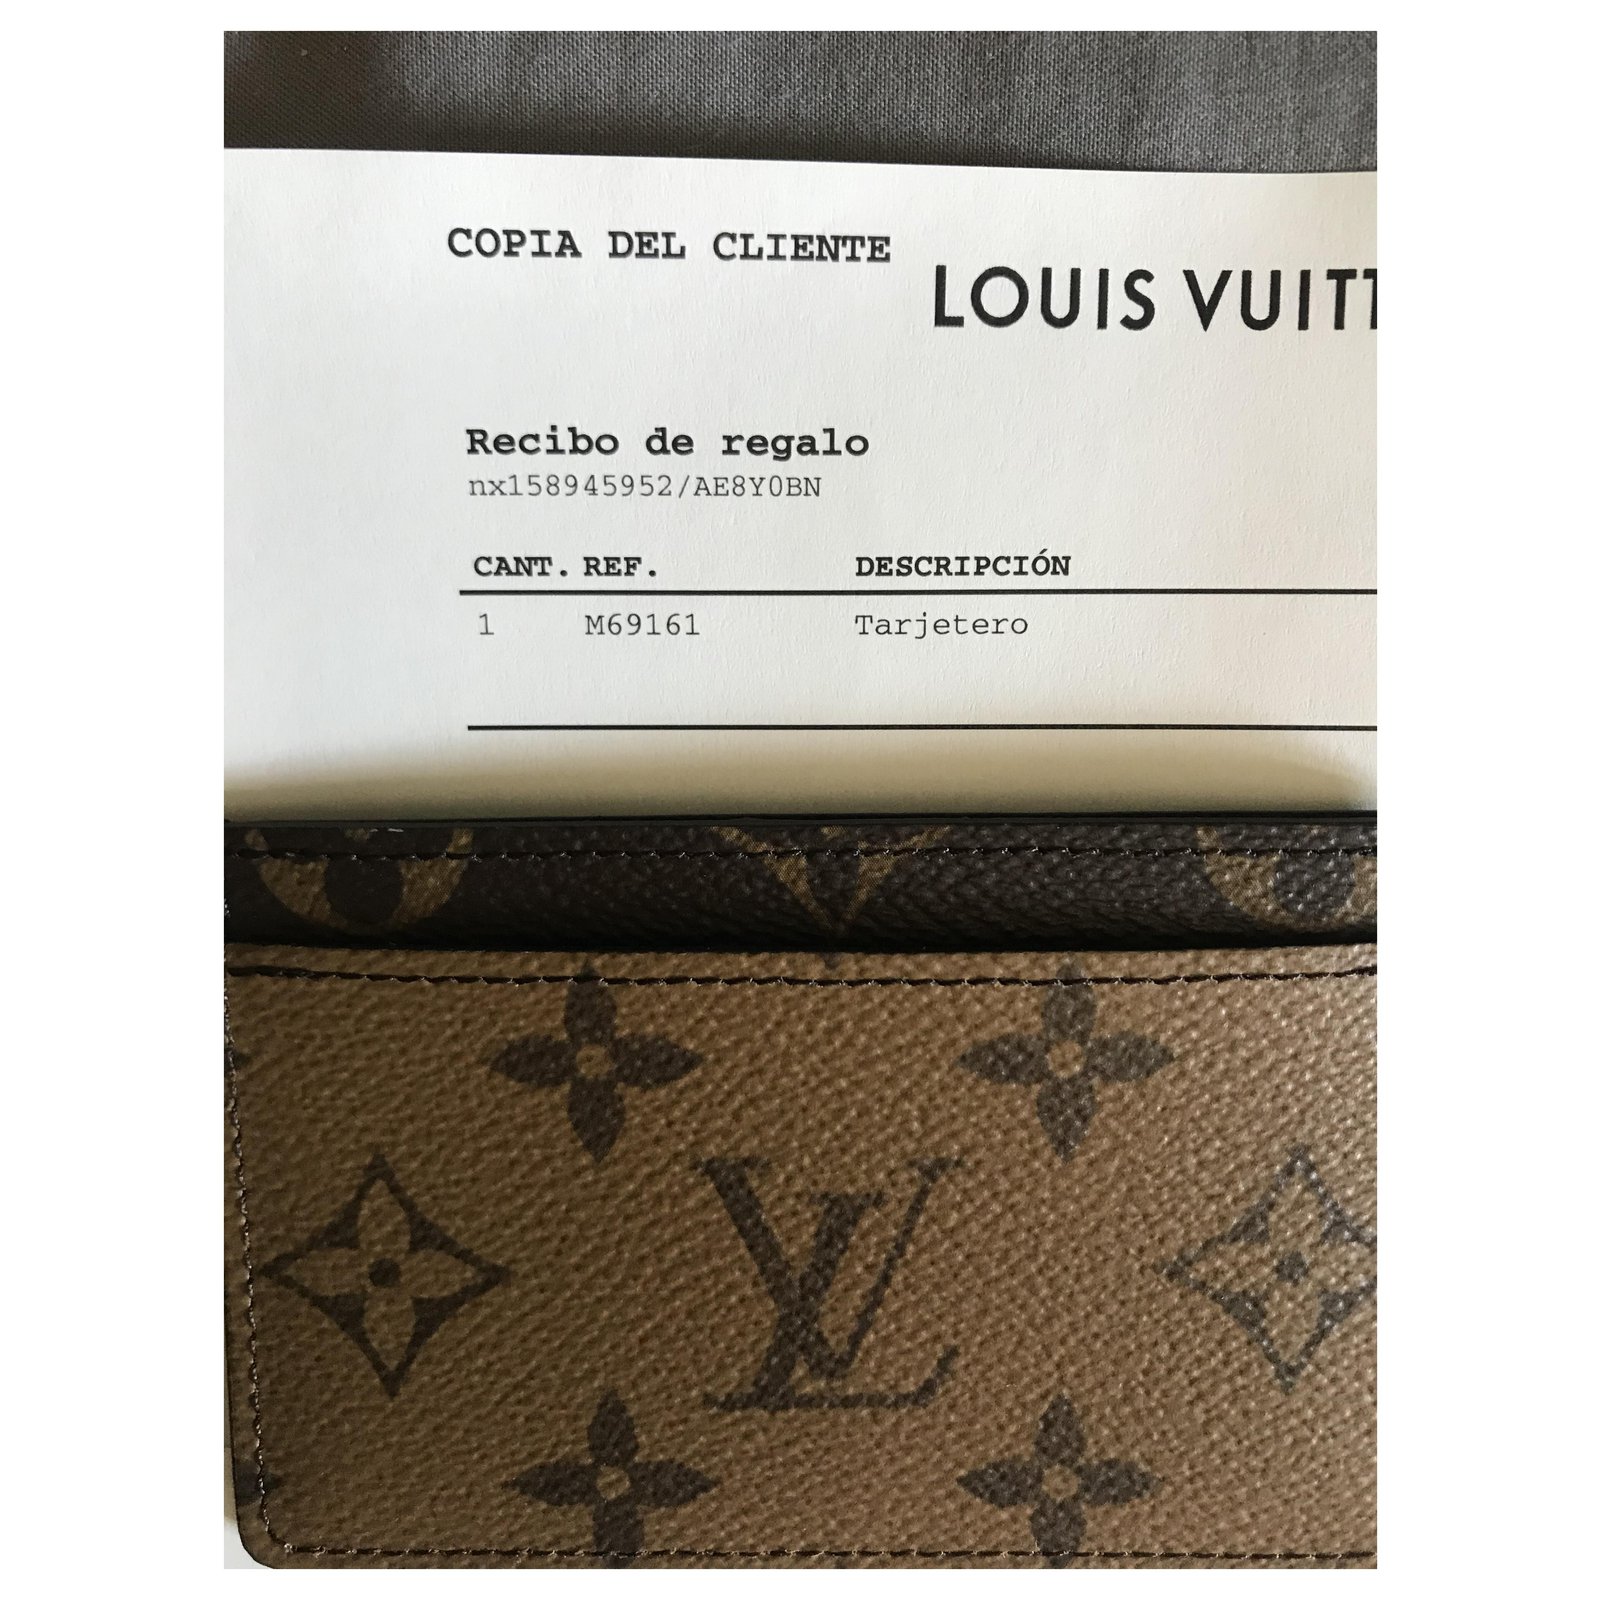 Authentique Porte-cartes Louis Vuitton - annonce 3825987